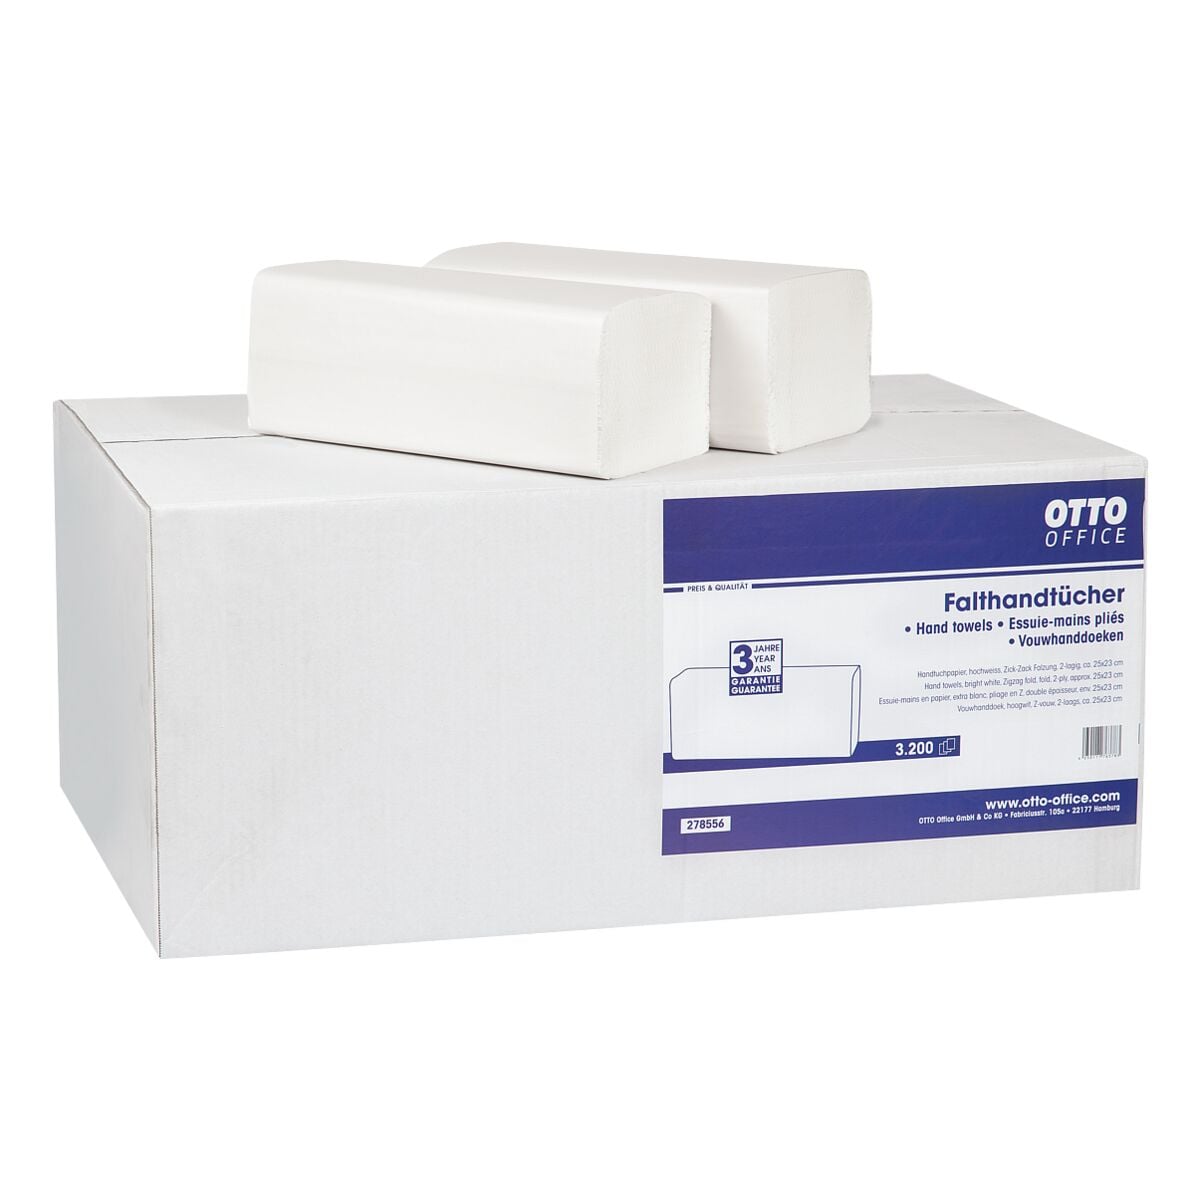 Essuie-mains en papier OTTO Office Standard 2 paisseurs, blanc, 25 cm x 23 cm de Ouate de cellulose avec pliage en Z - 3200 feuilles au total